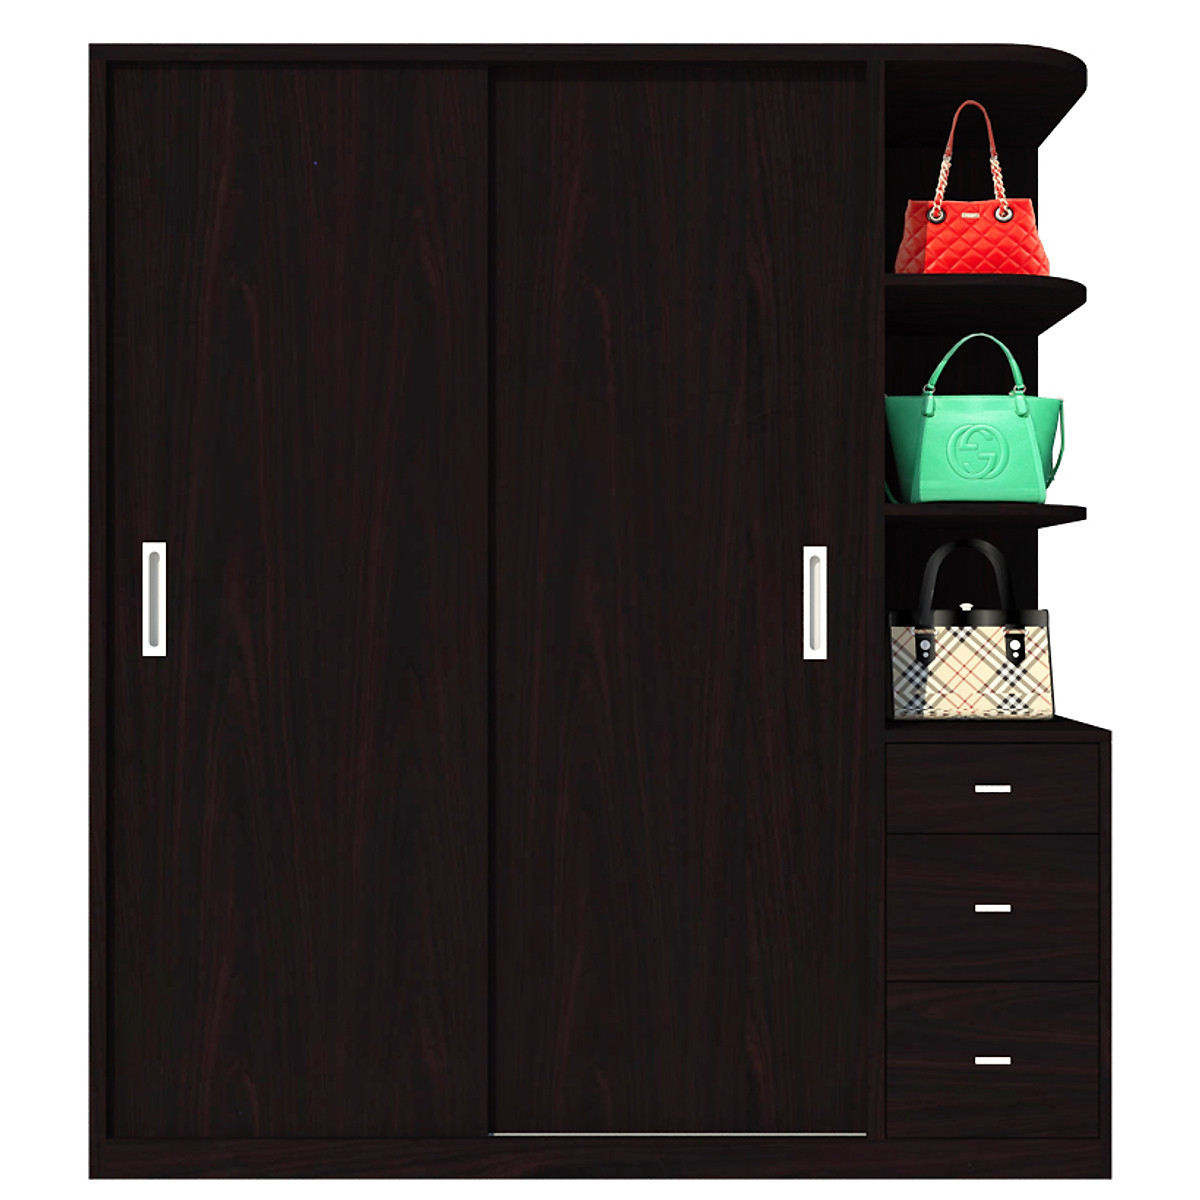 Tủ quần áo gỗ MDF Tundo cửa lùa màu nâu đậm 160 x 55 x 200cm